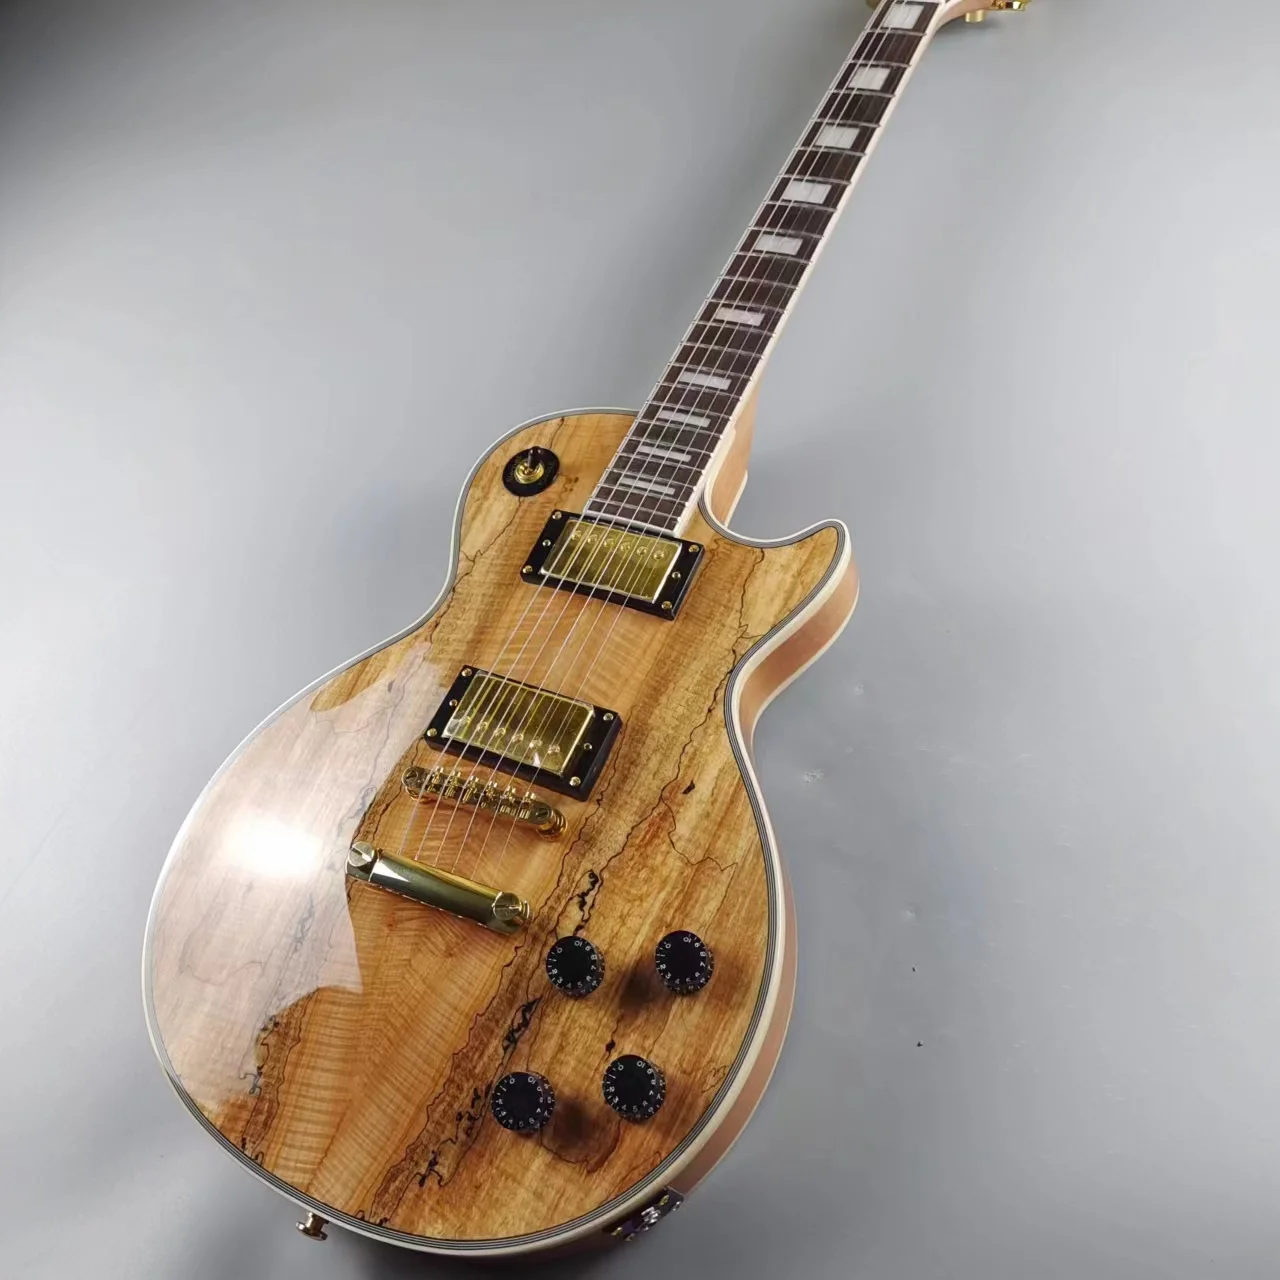 

Индивидуальная электрическая гитара с грязным деревянным шпоном, зернистость древесины в стиле ретро, задний корпус из натурального дерева, импортная краска, яркая фотогитара